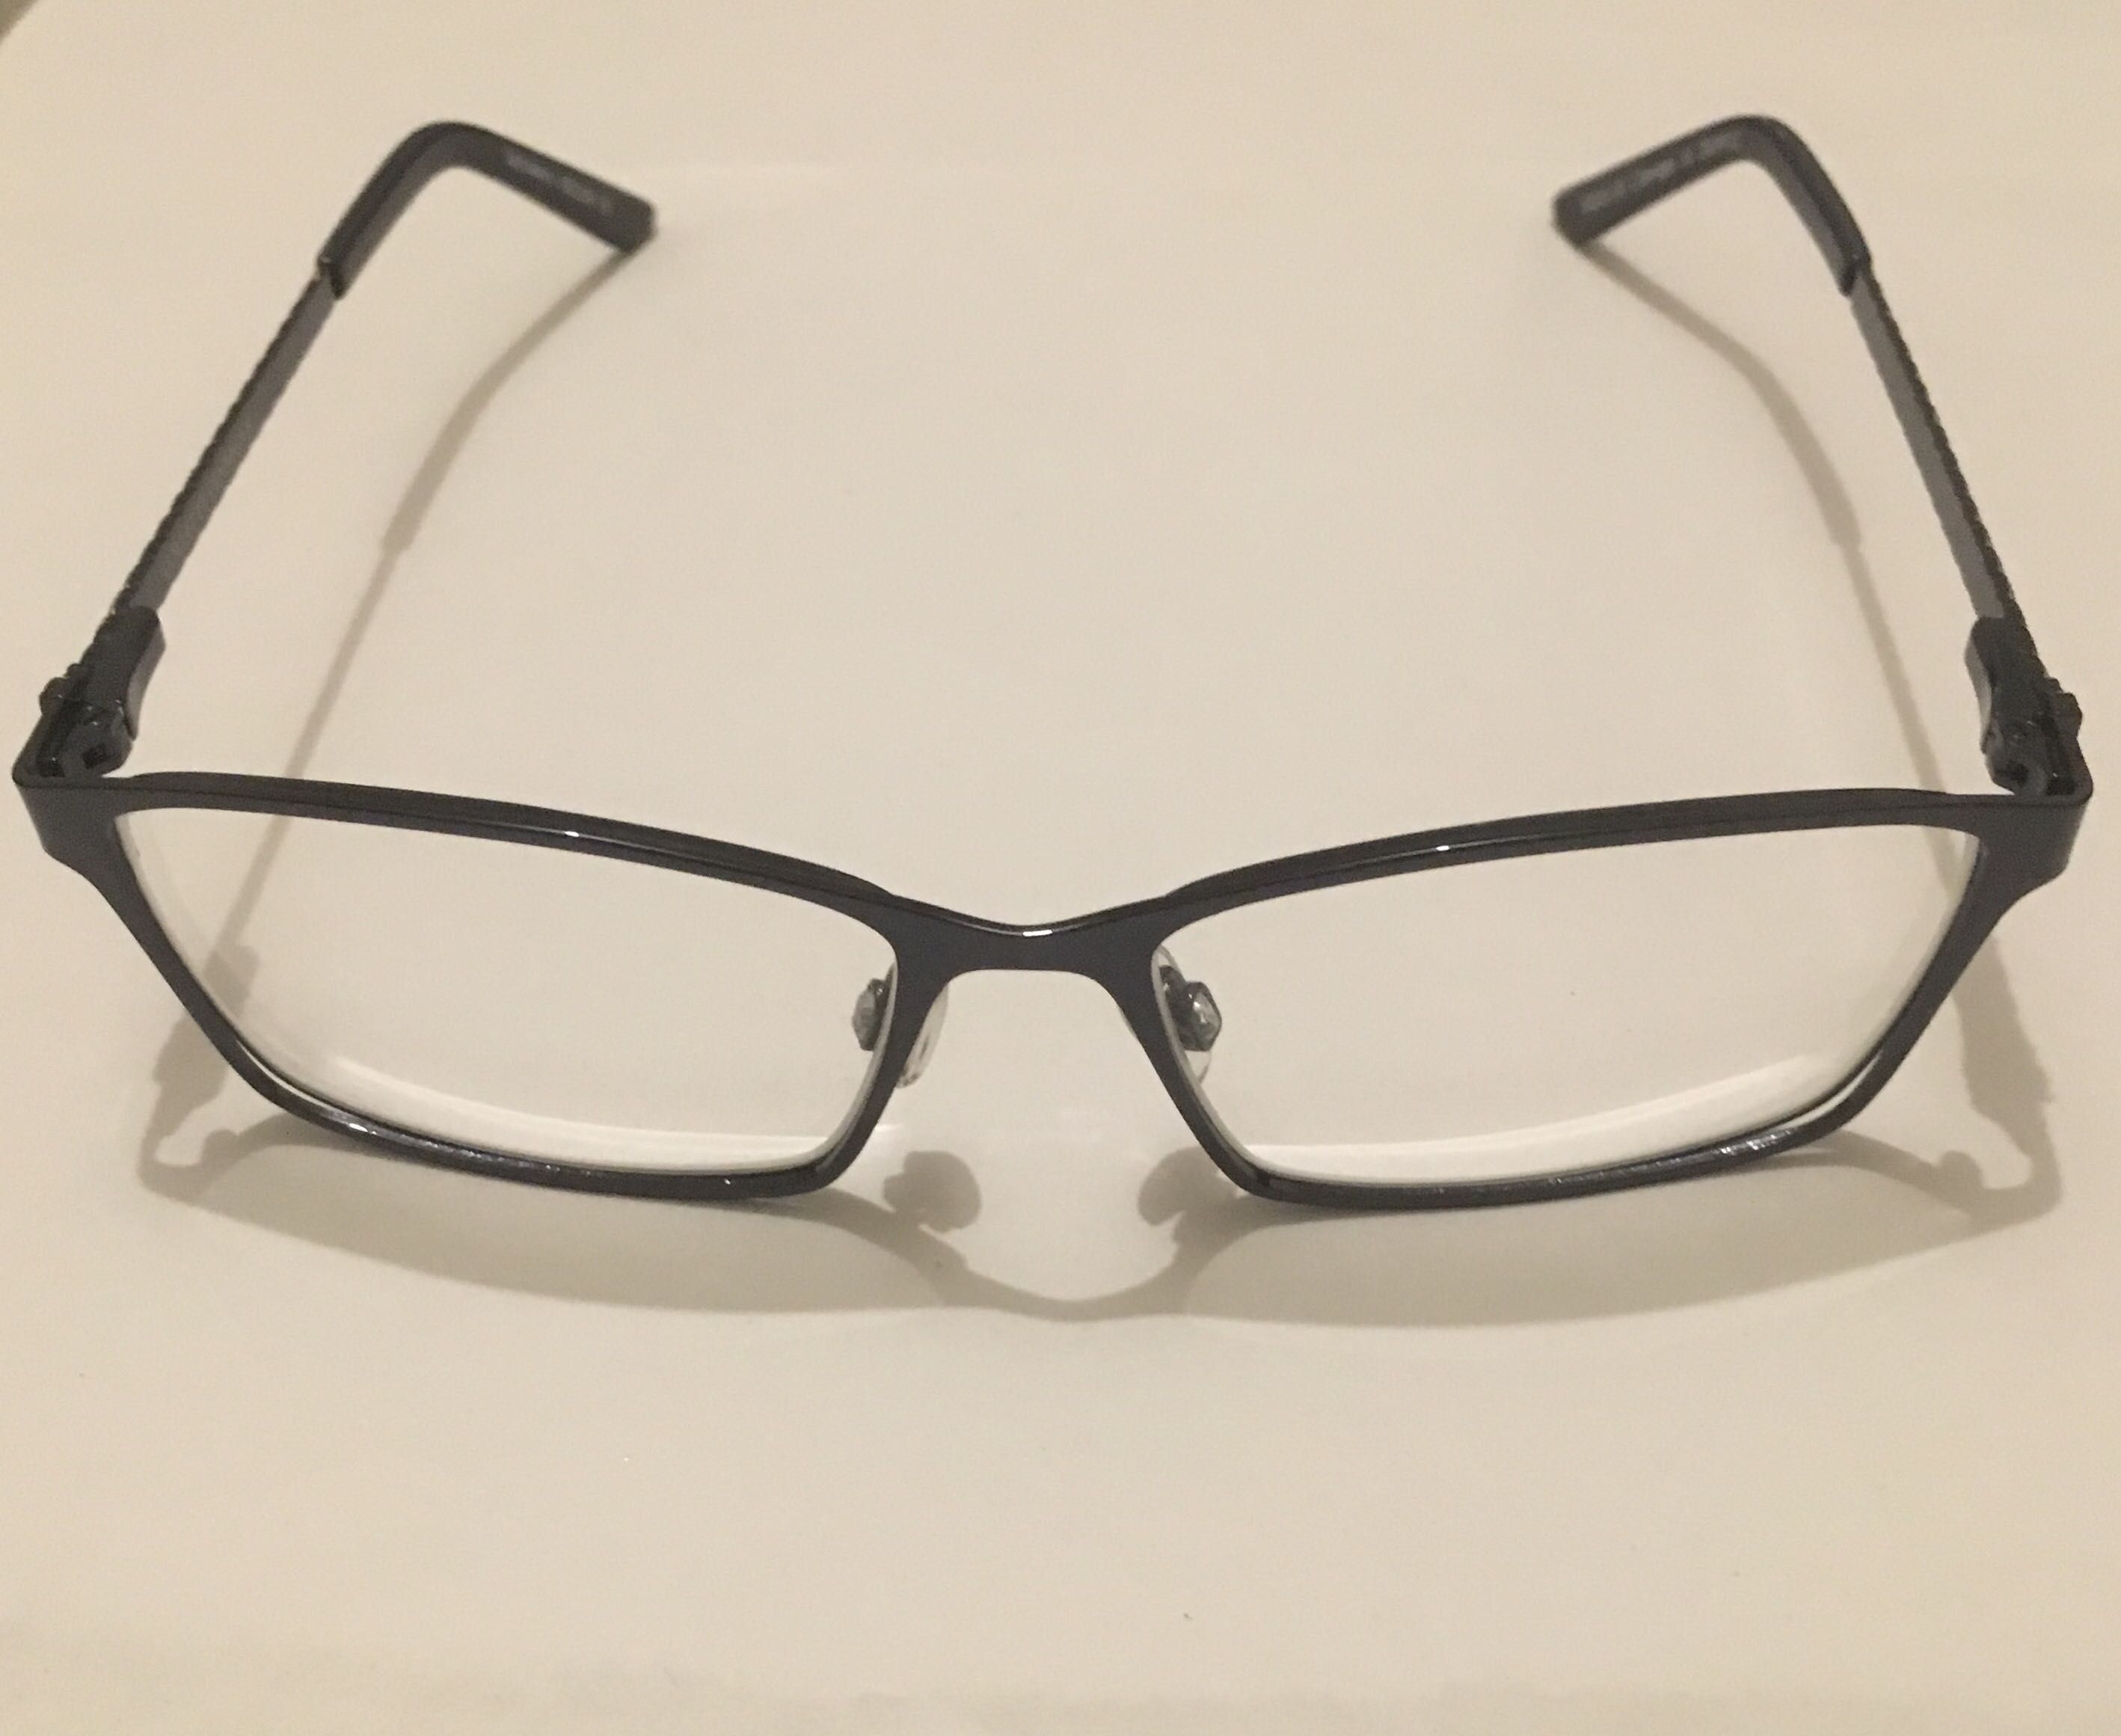 Armação de óculos marca Collette Dinnigan